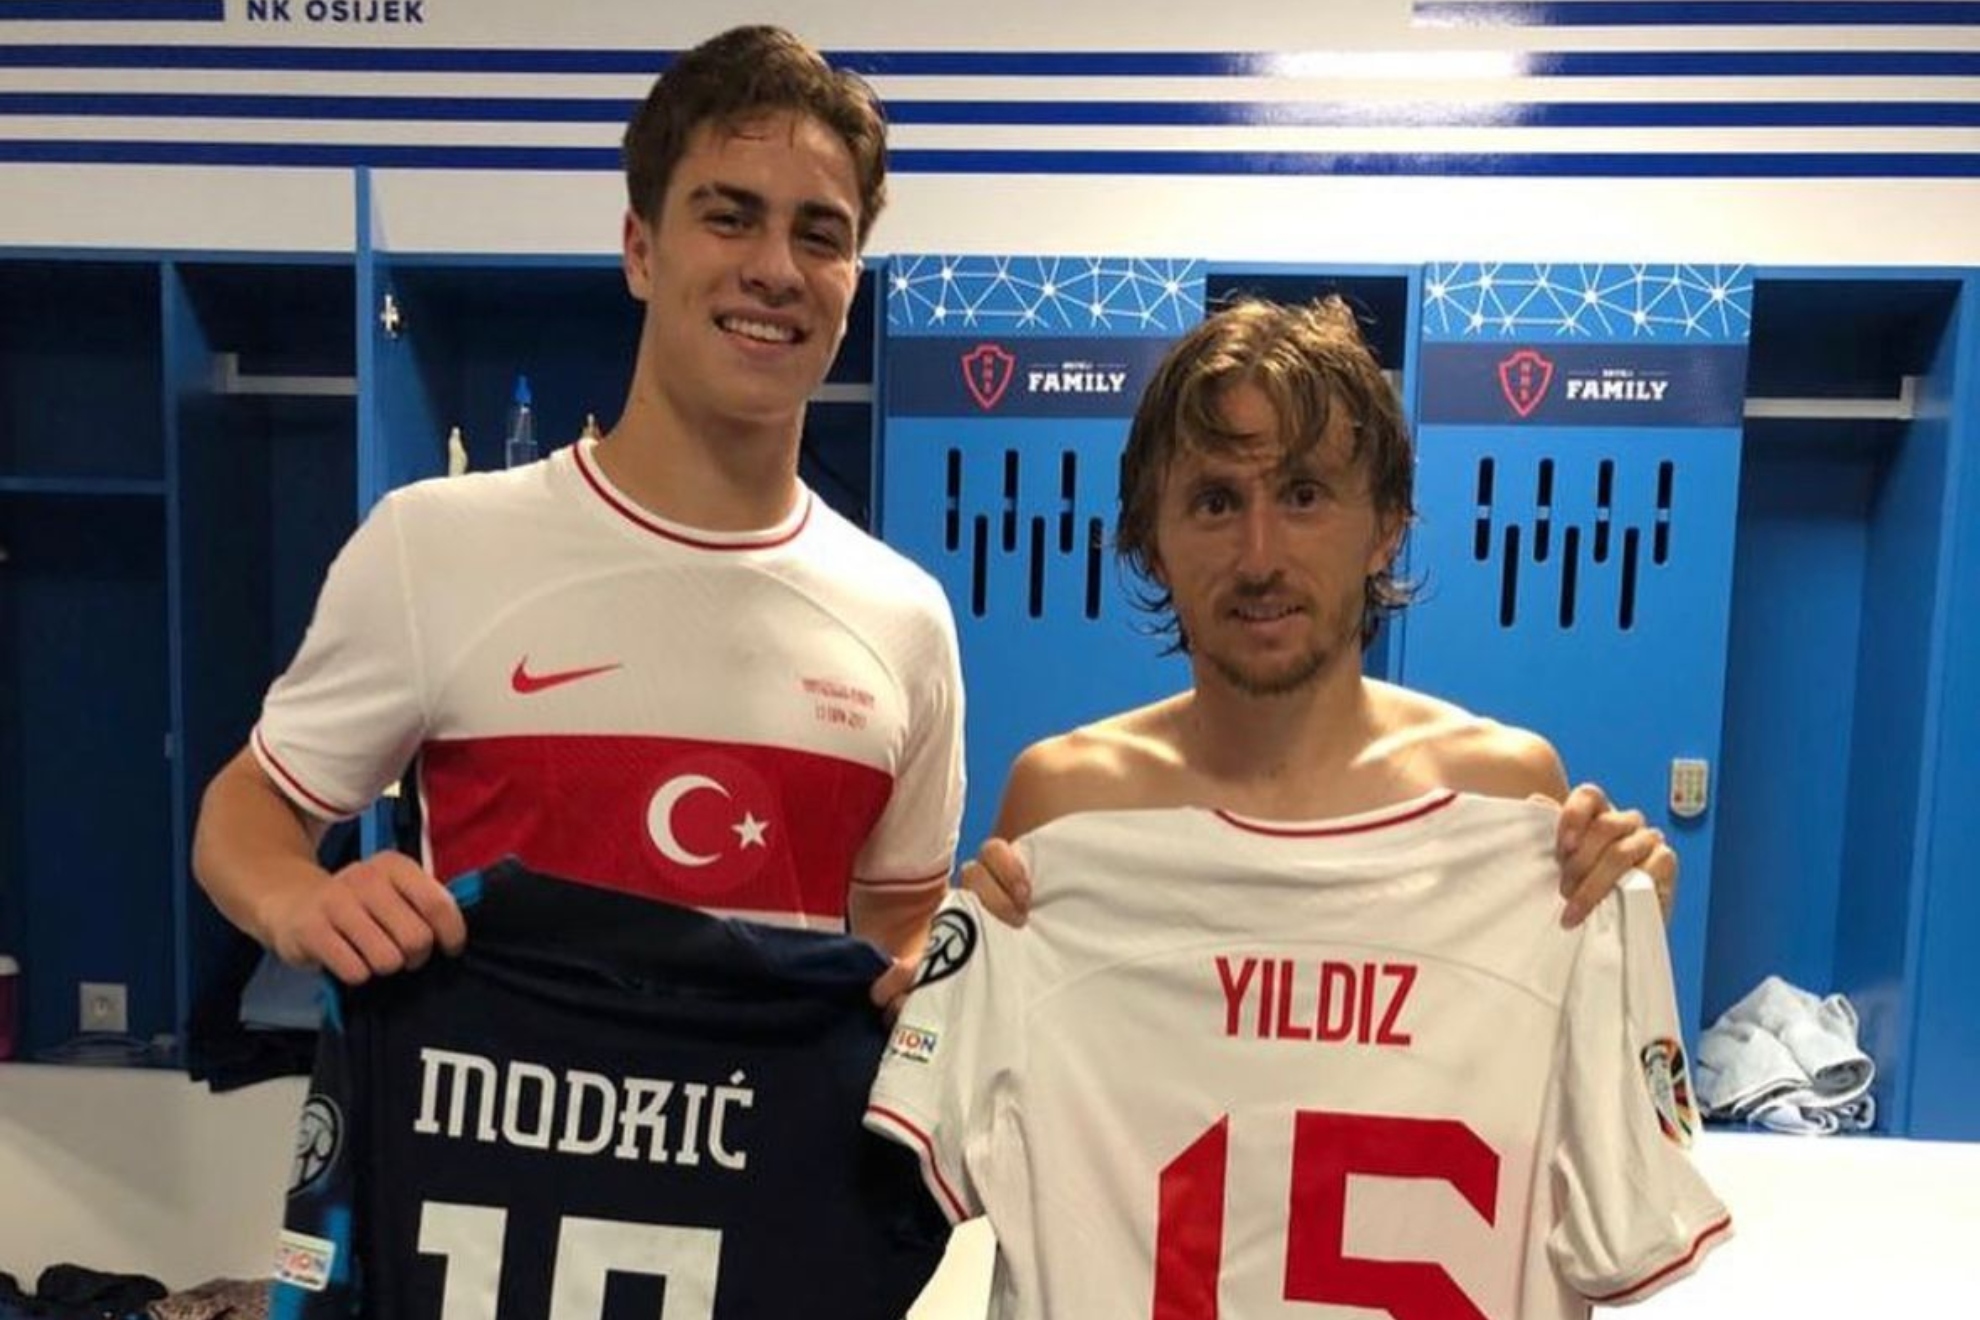 Yildiz y Modric intercambiaron sus camisetas en el vestuario.